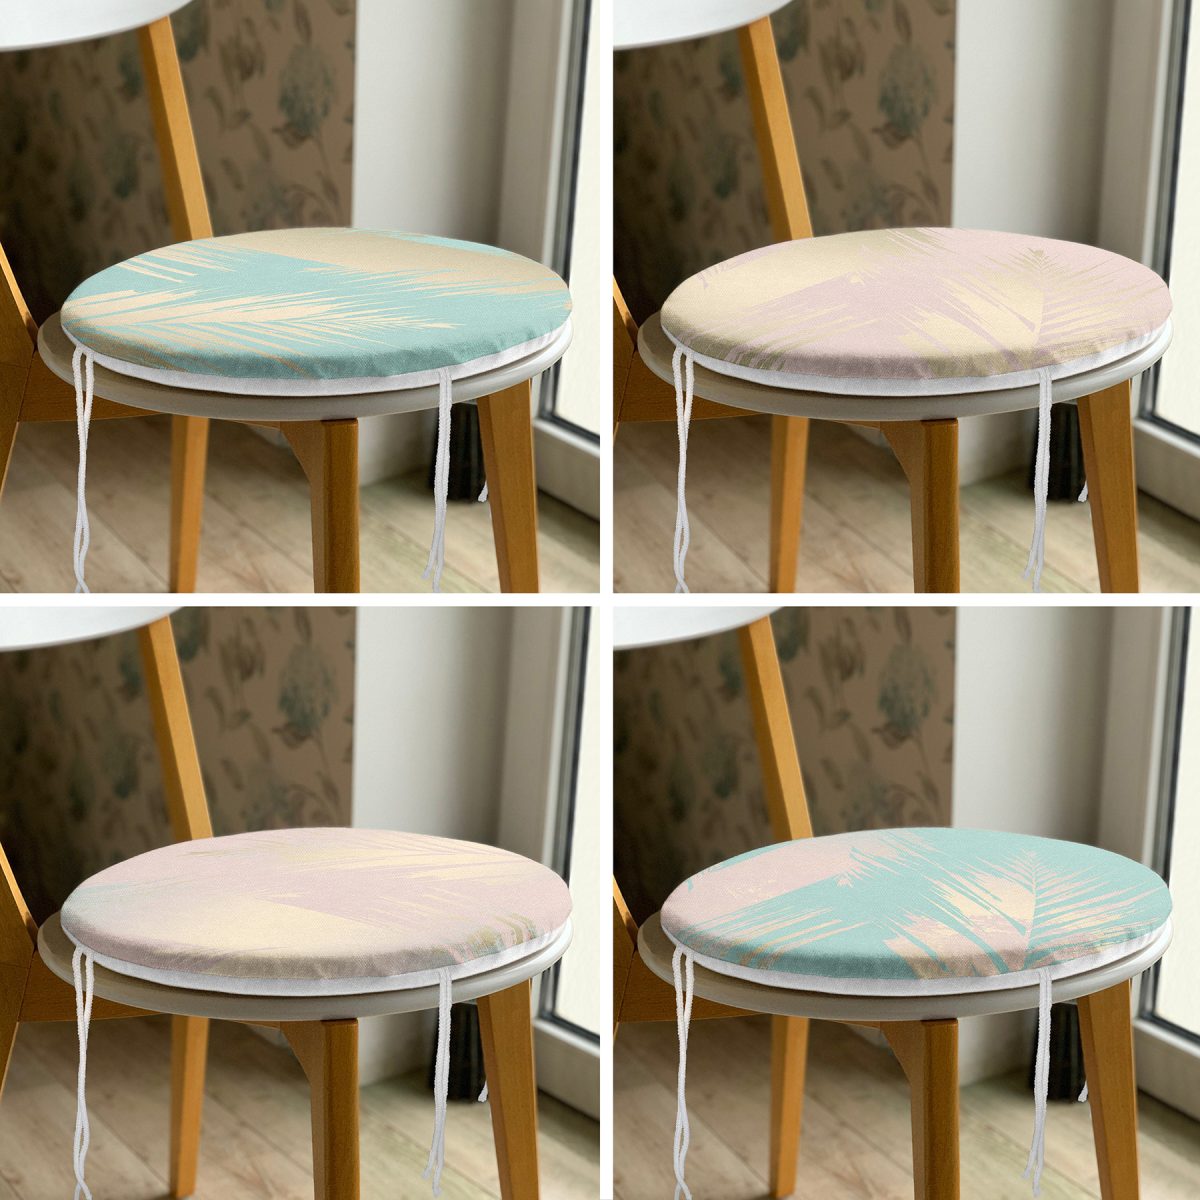 4'lü Soft Renkli Özel Tasarım Dekoratif Yuvarlak Fermuarlı Sandalye Minderi Seti Realhomes